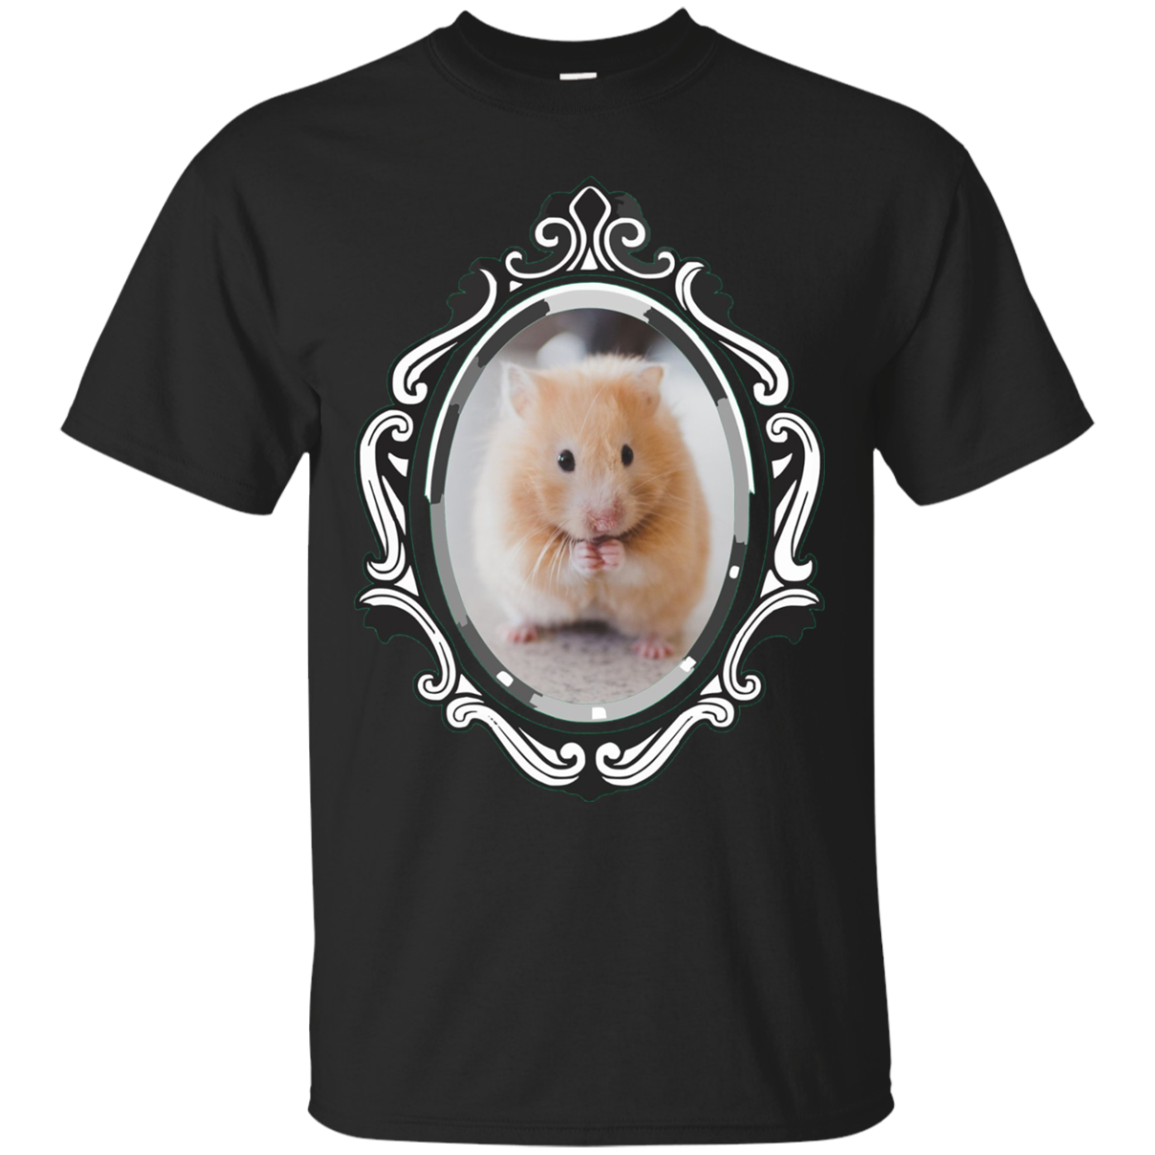 Beautiful Hamster Face T-shirt